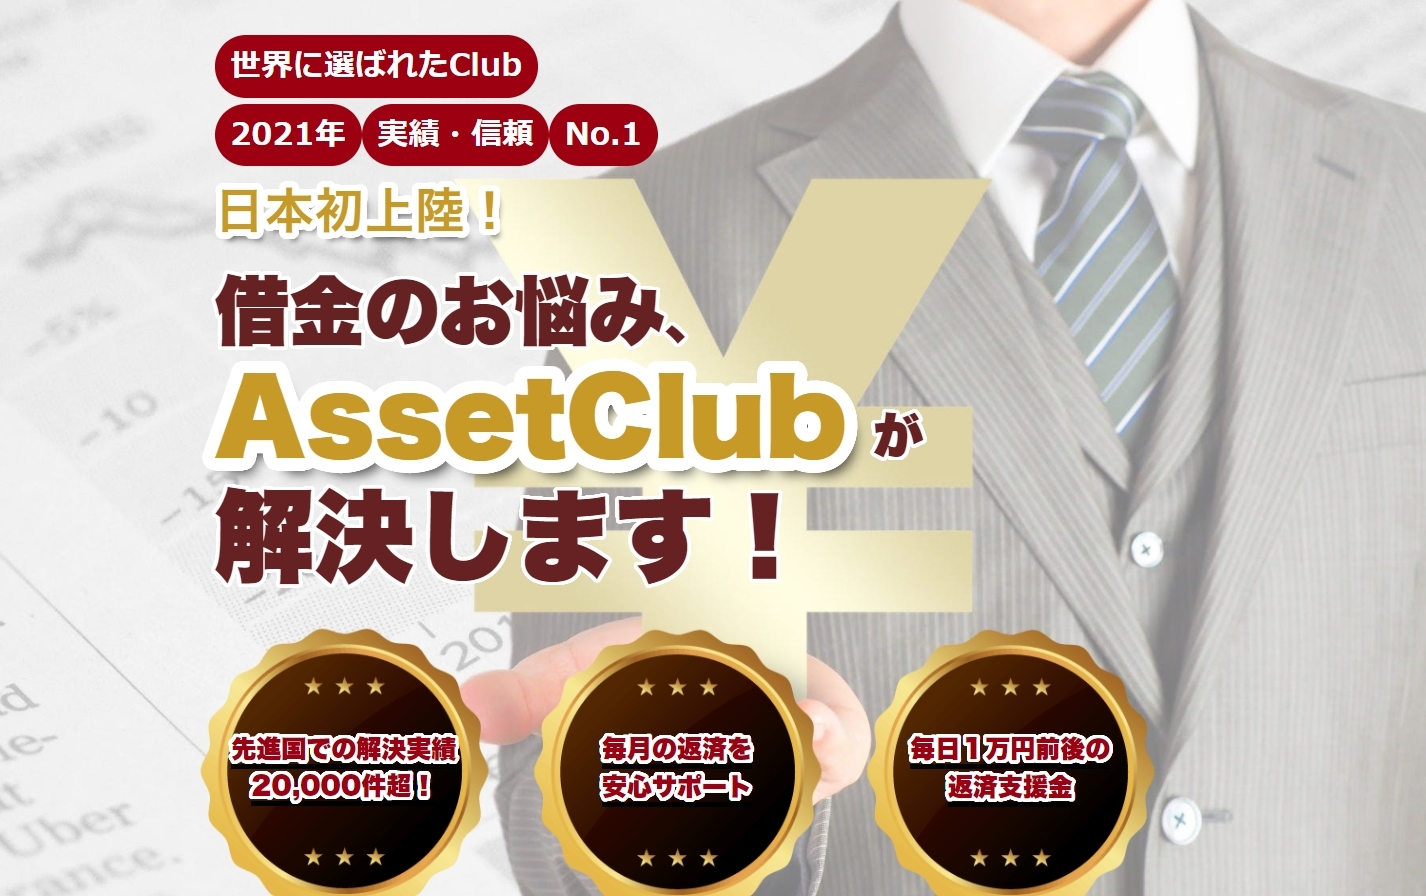 アセットクラブ（AssetClub）は超危険だった！嘘で固められた詐欺案件なので登録はしないで下さい！